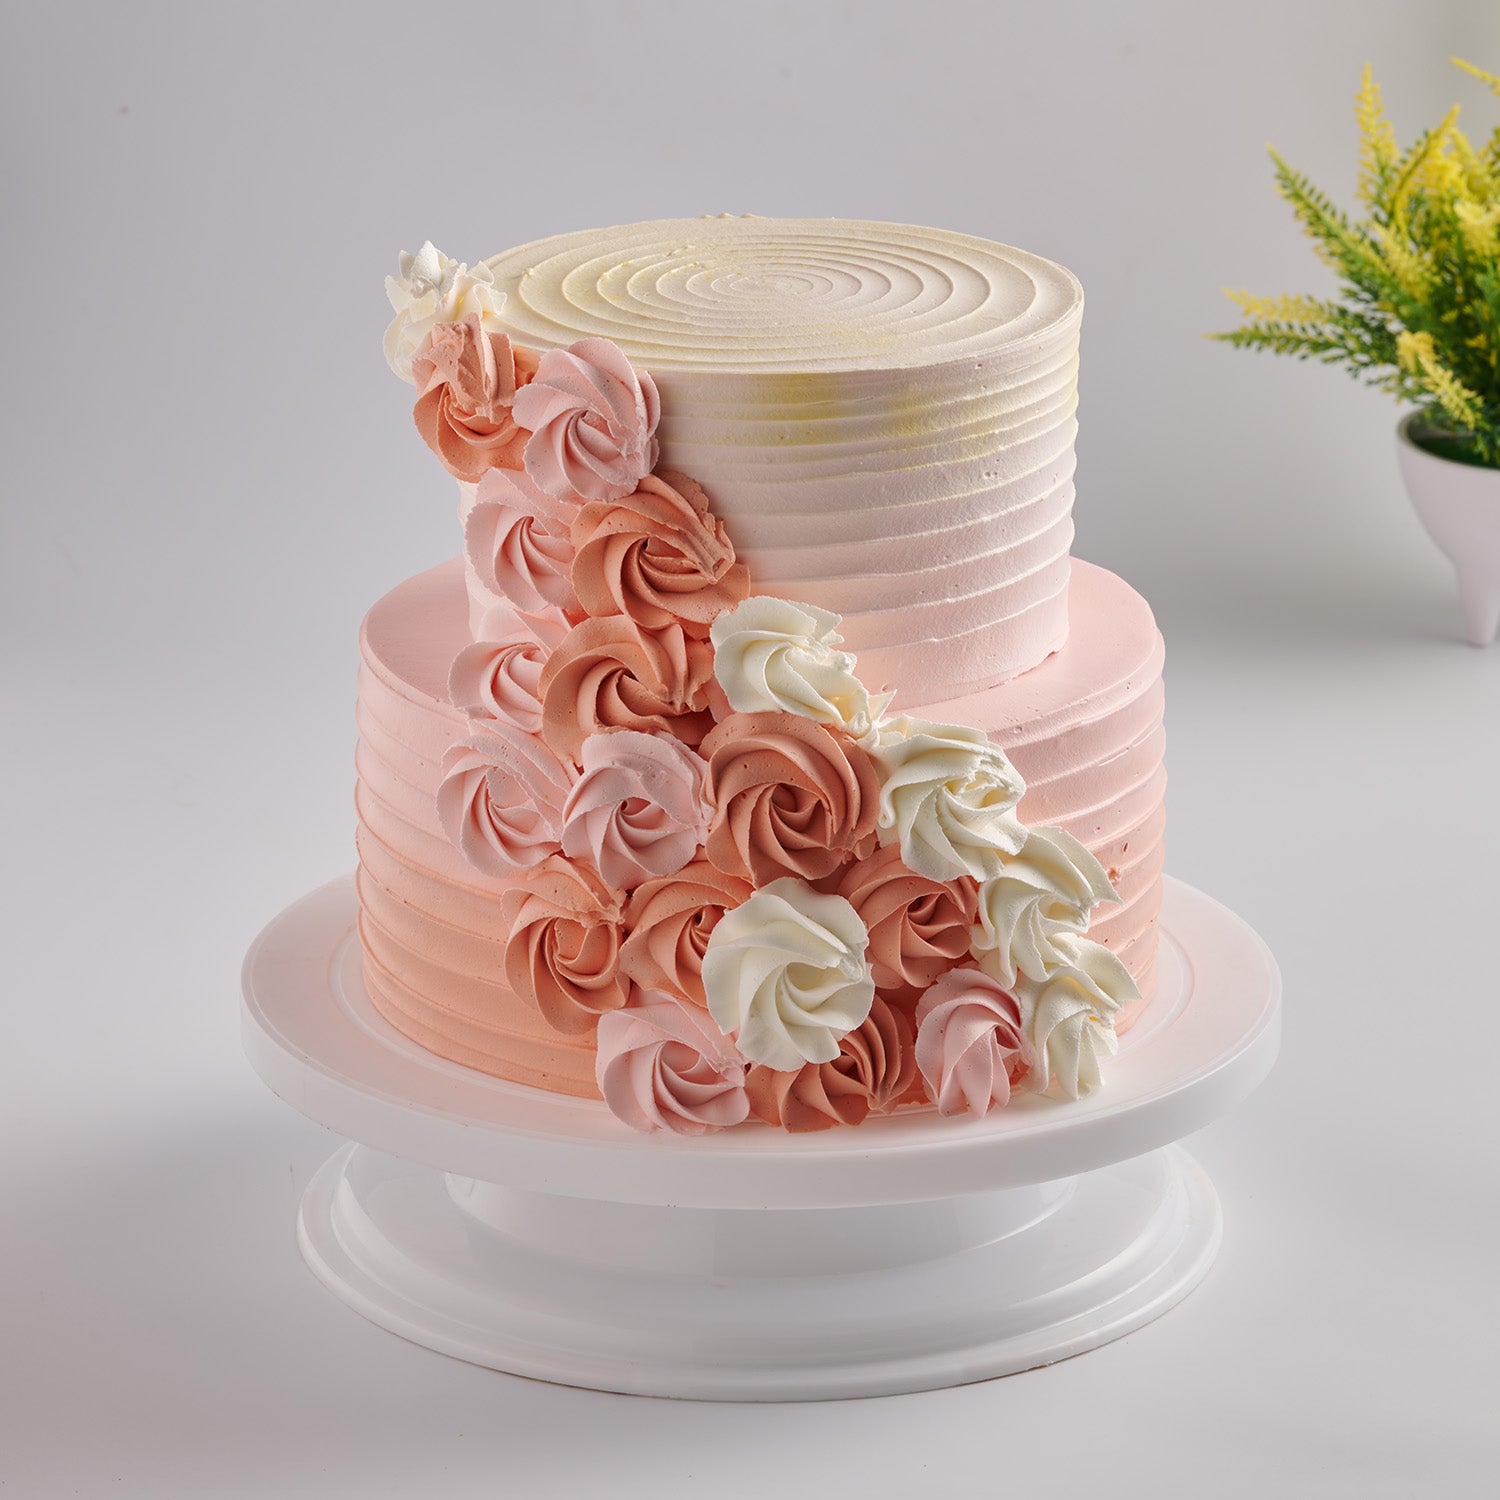 2 tier Anniversary cake - classic-cakes.com